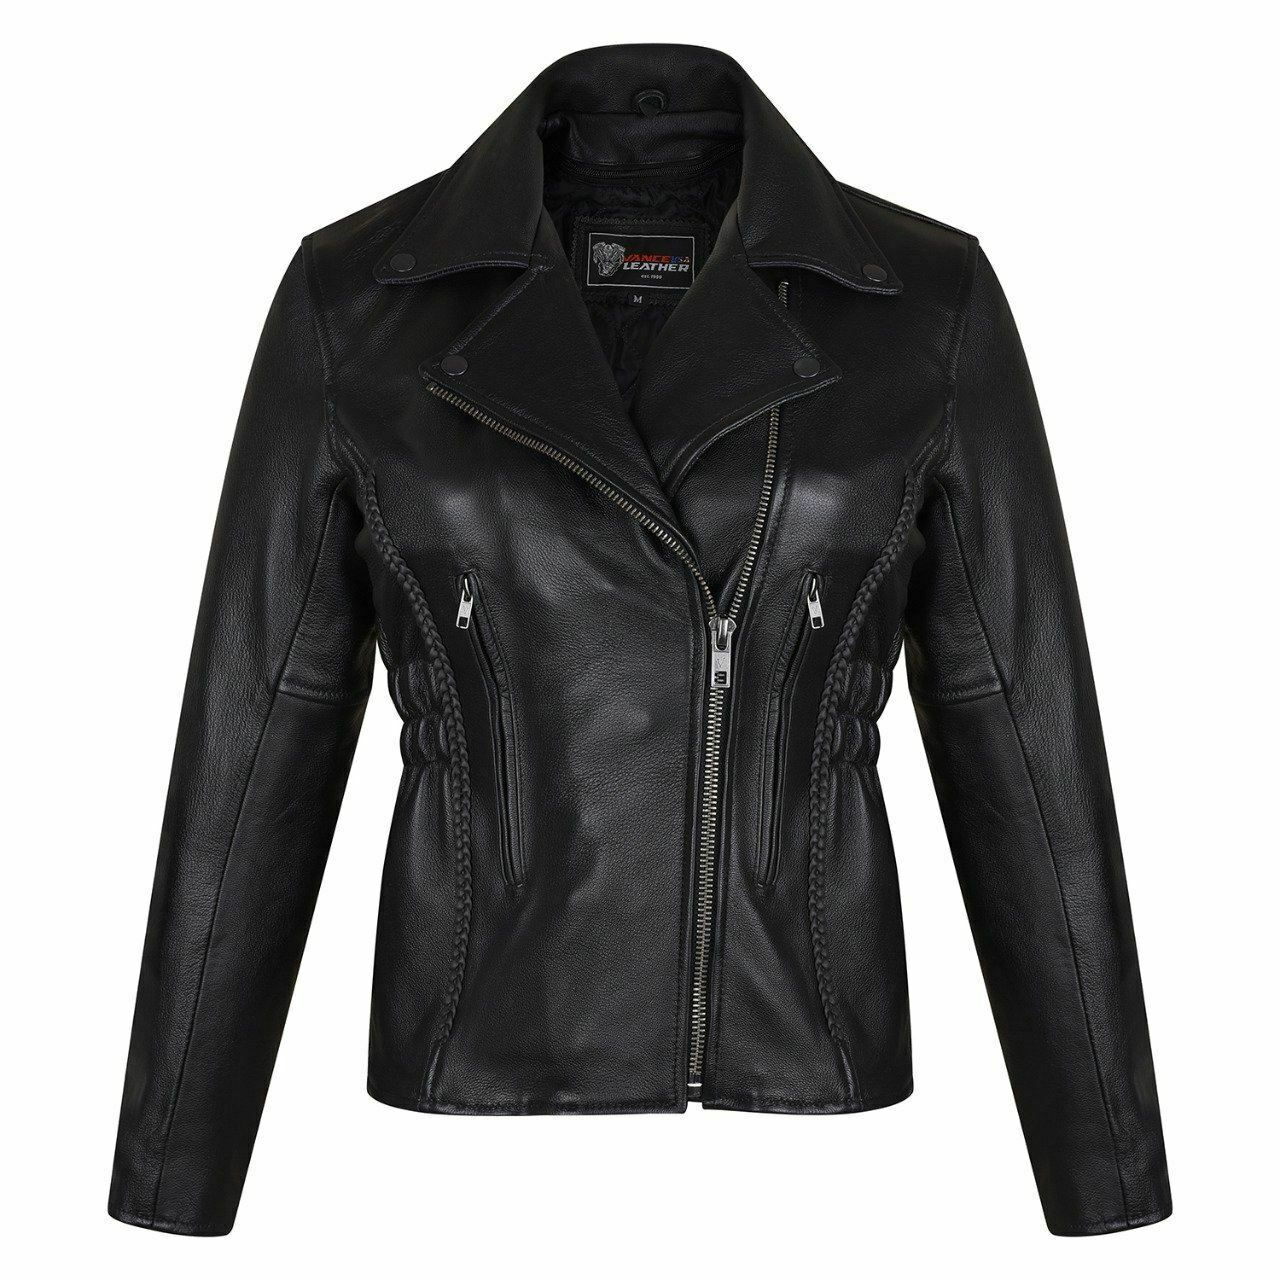 Vance Leather VL615 Premium Cowhide Vented Motorcycle Jacket